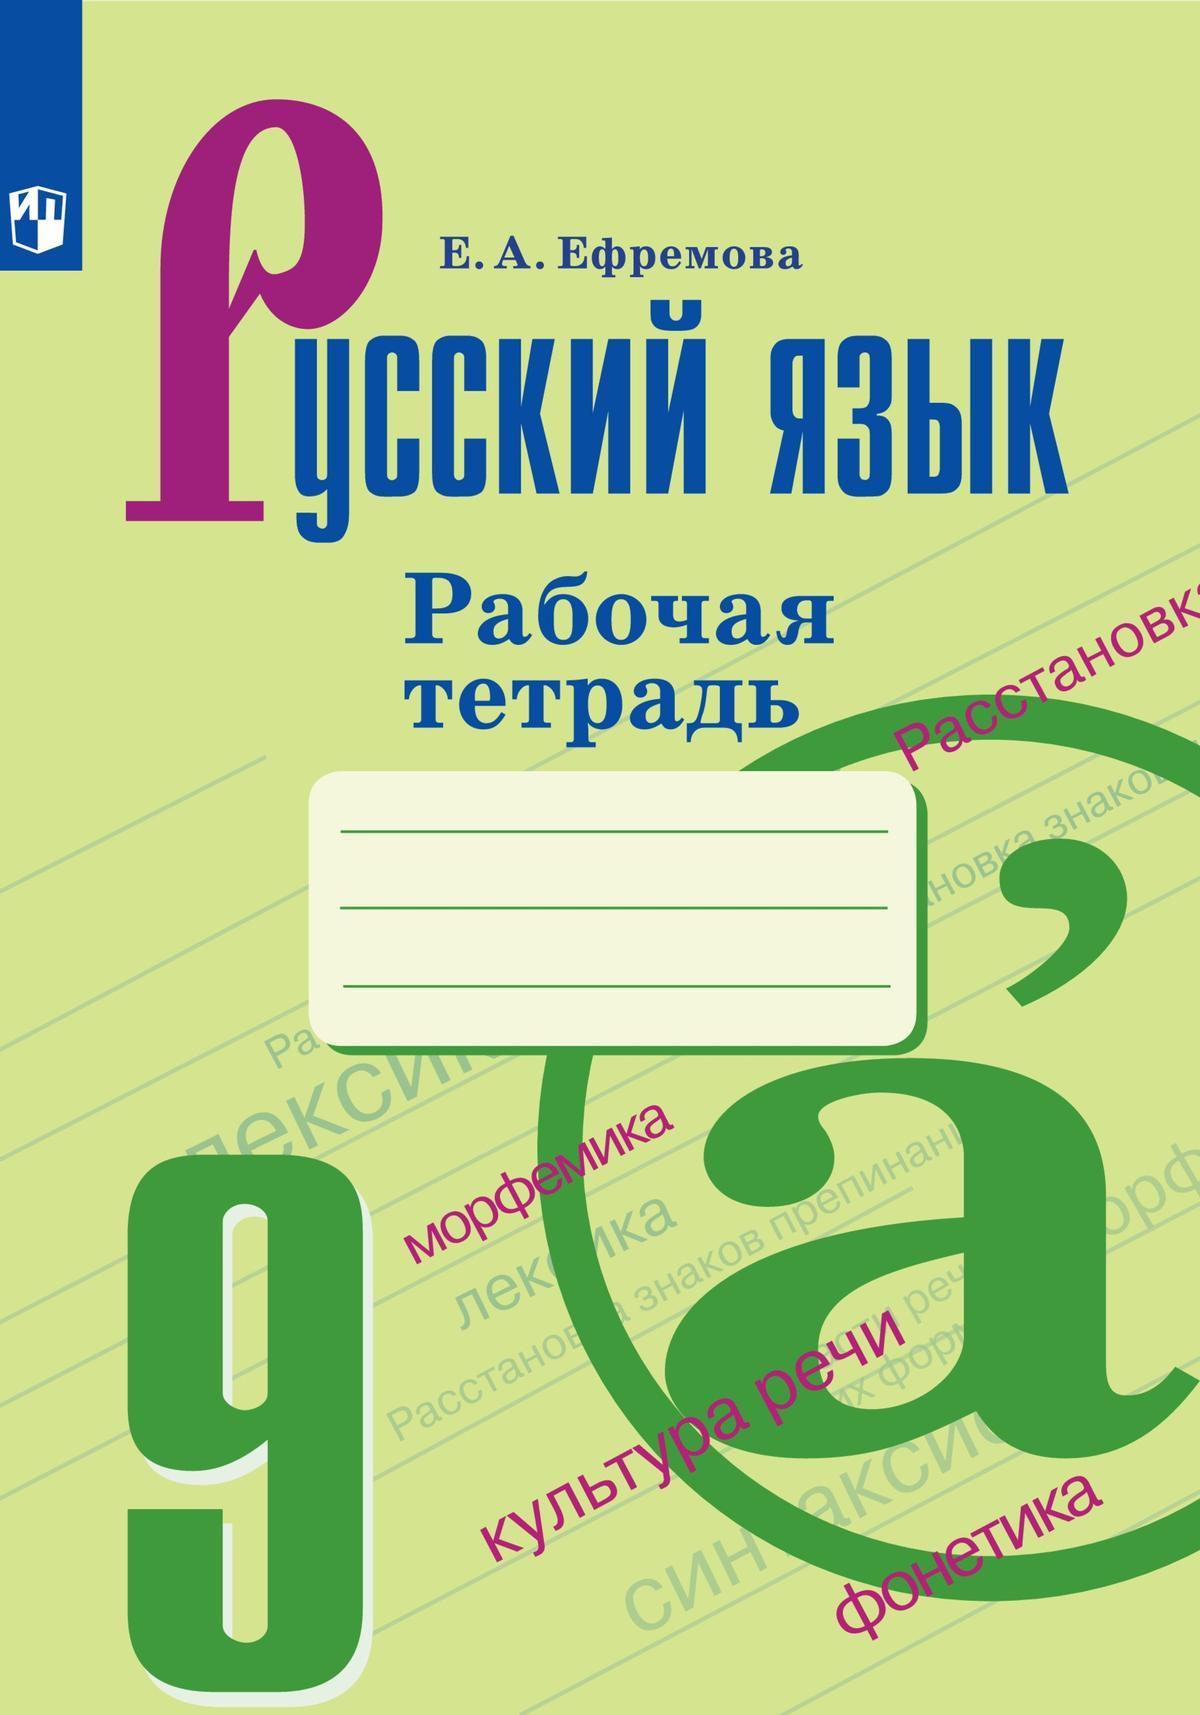 Русский язык. Рабочая тетрадь. 9 класс 1